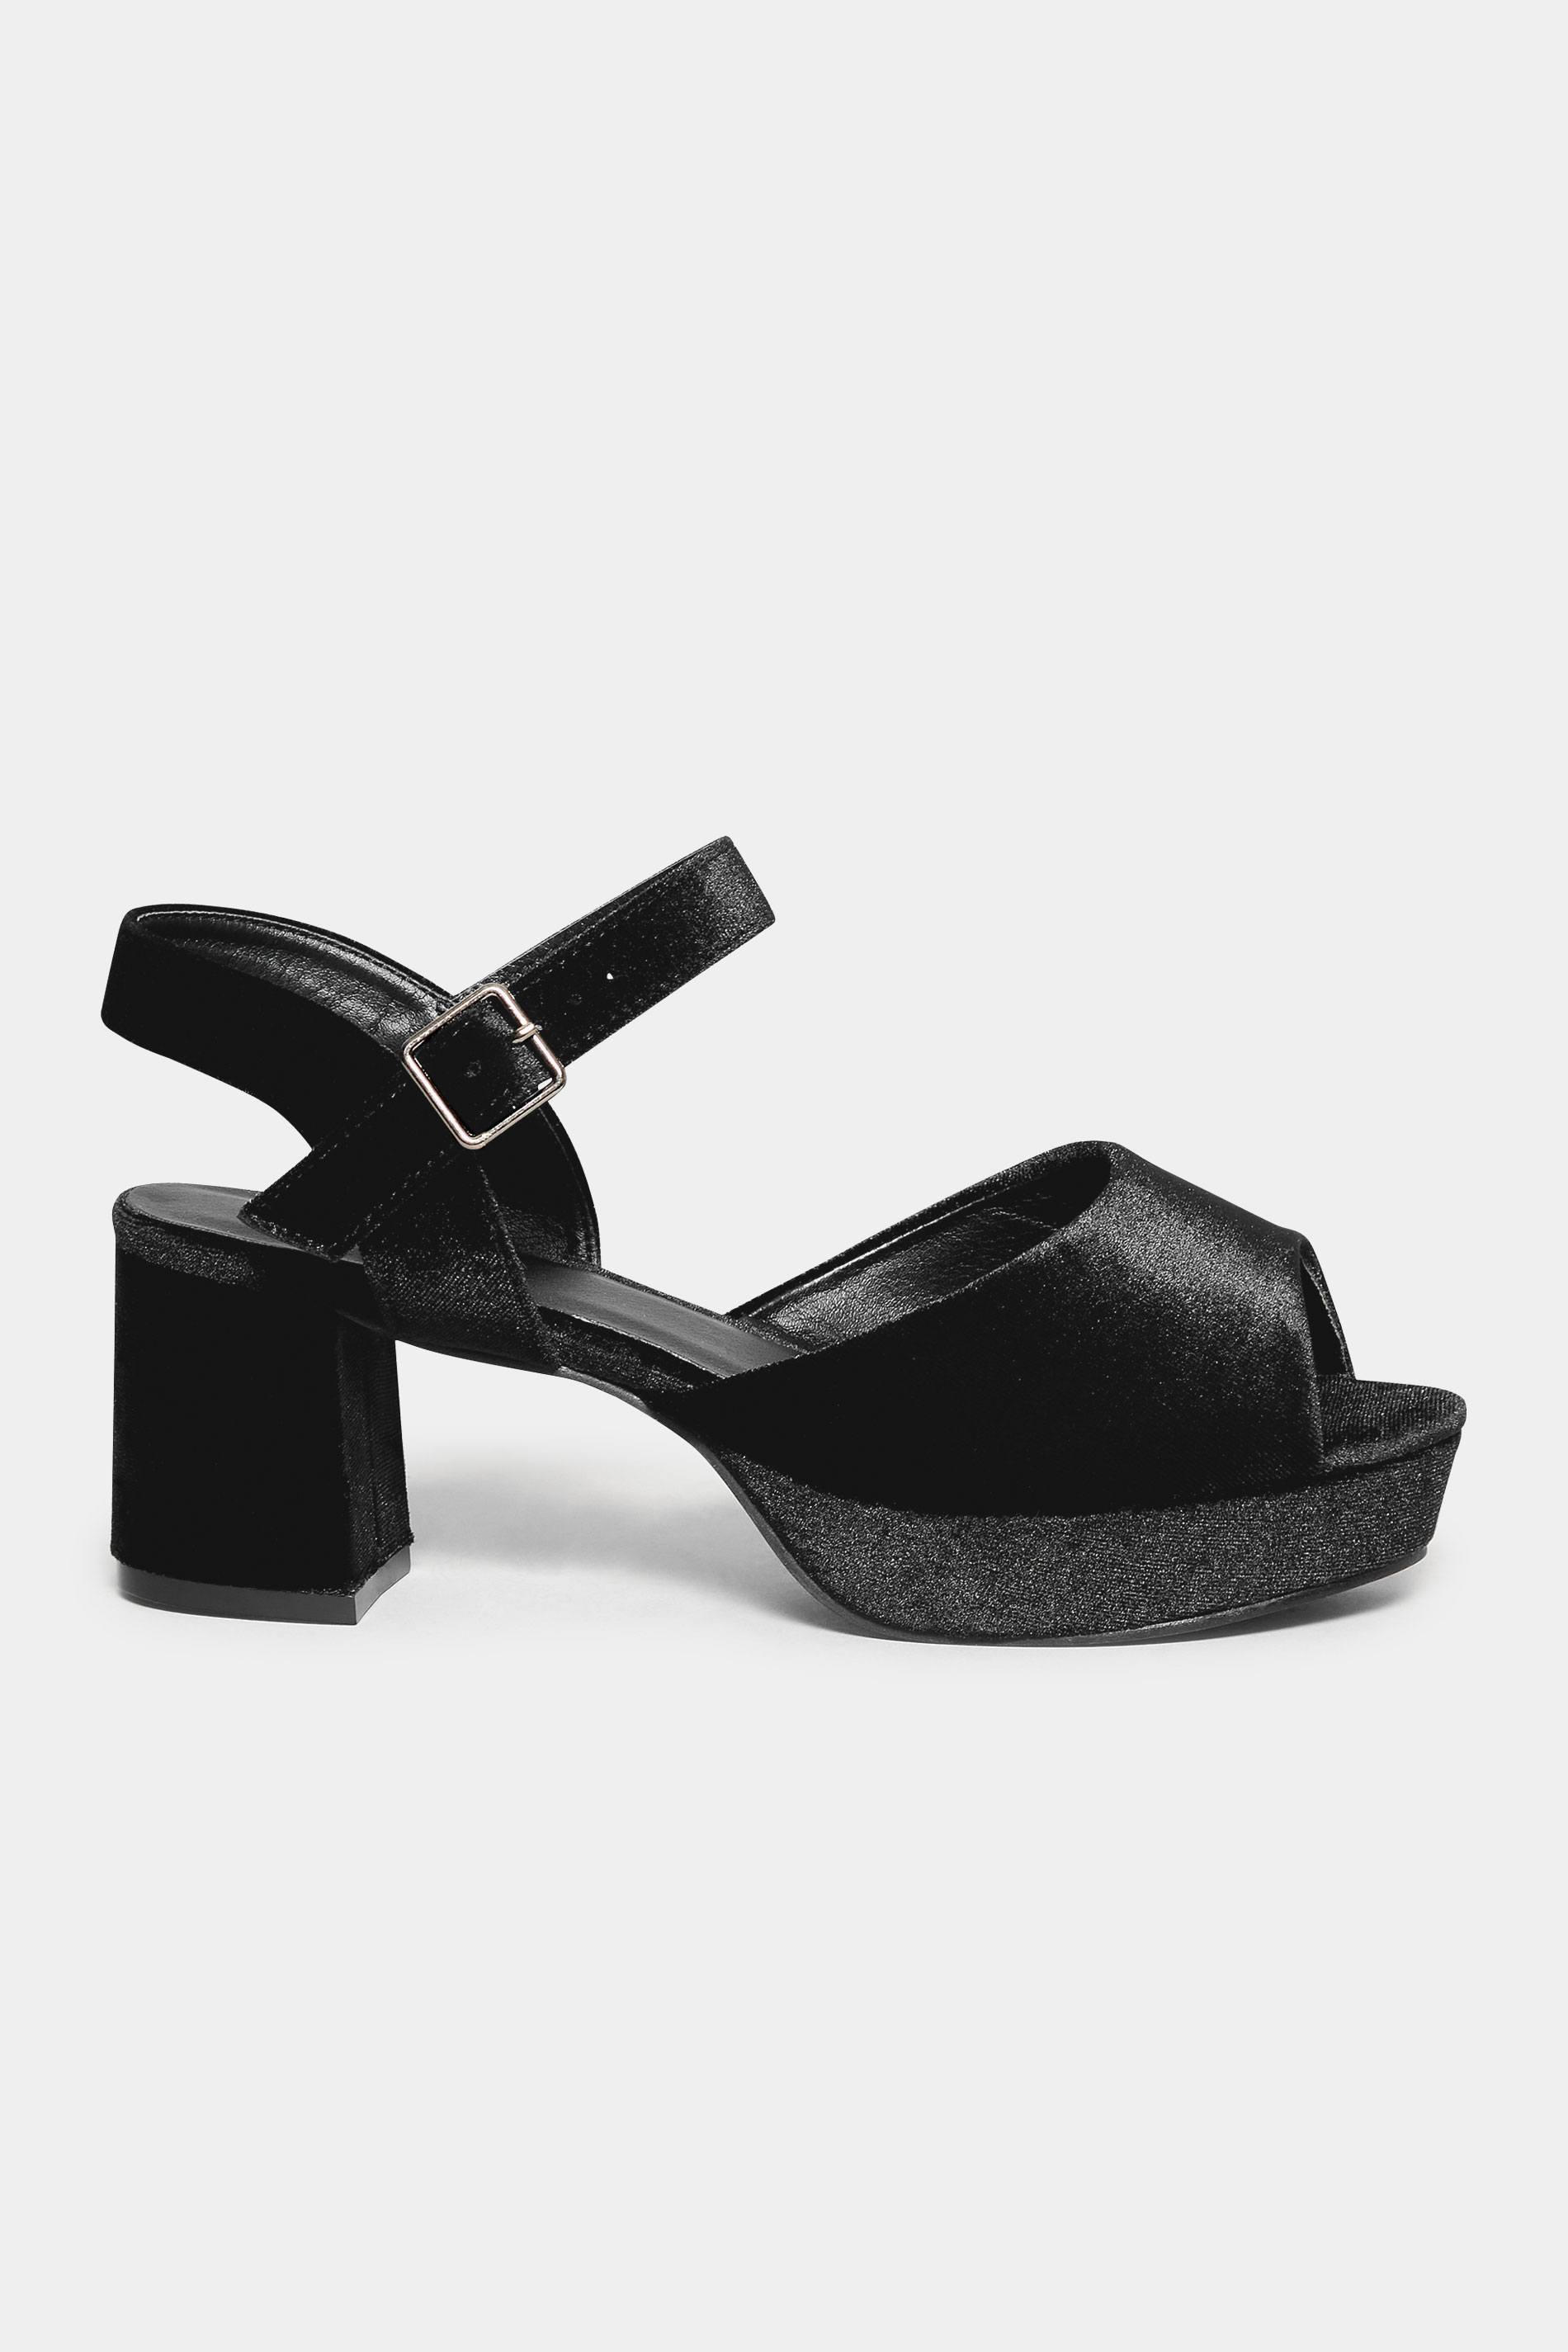 LIMITED COLLECTION Black Velvet Platform Heels In Wide E Fit & Extra ...